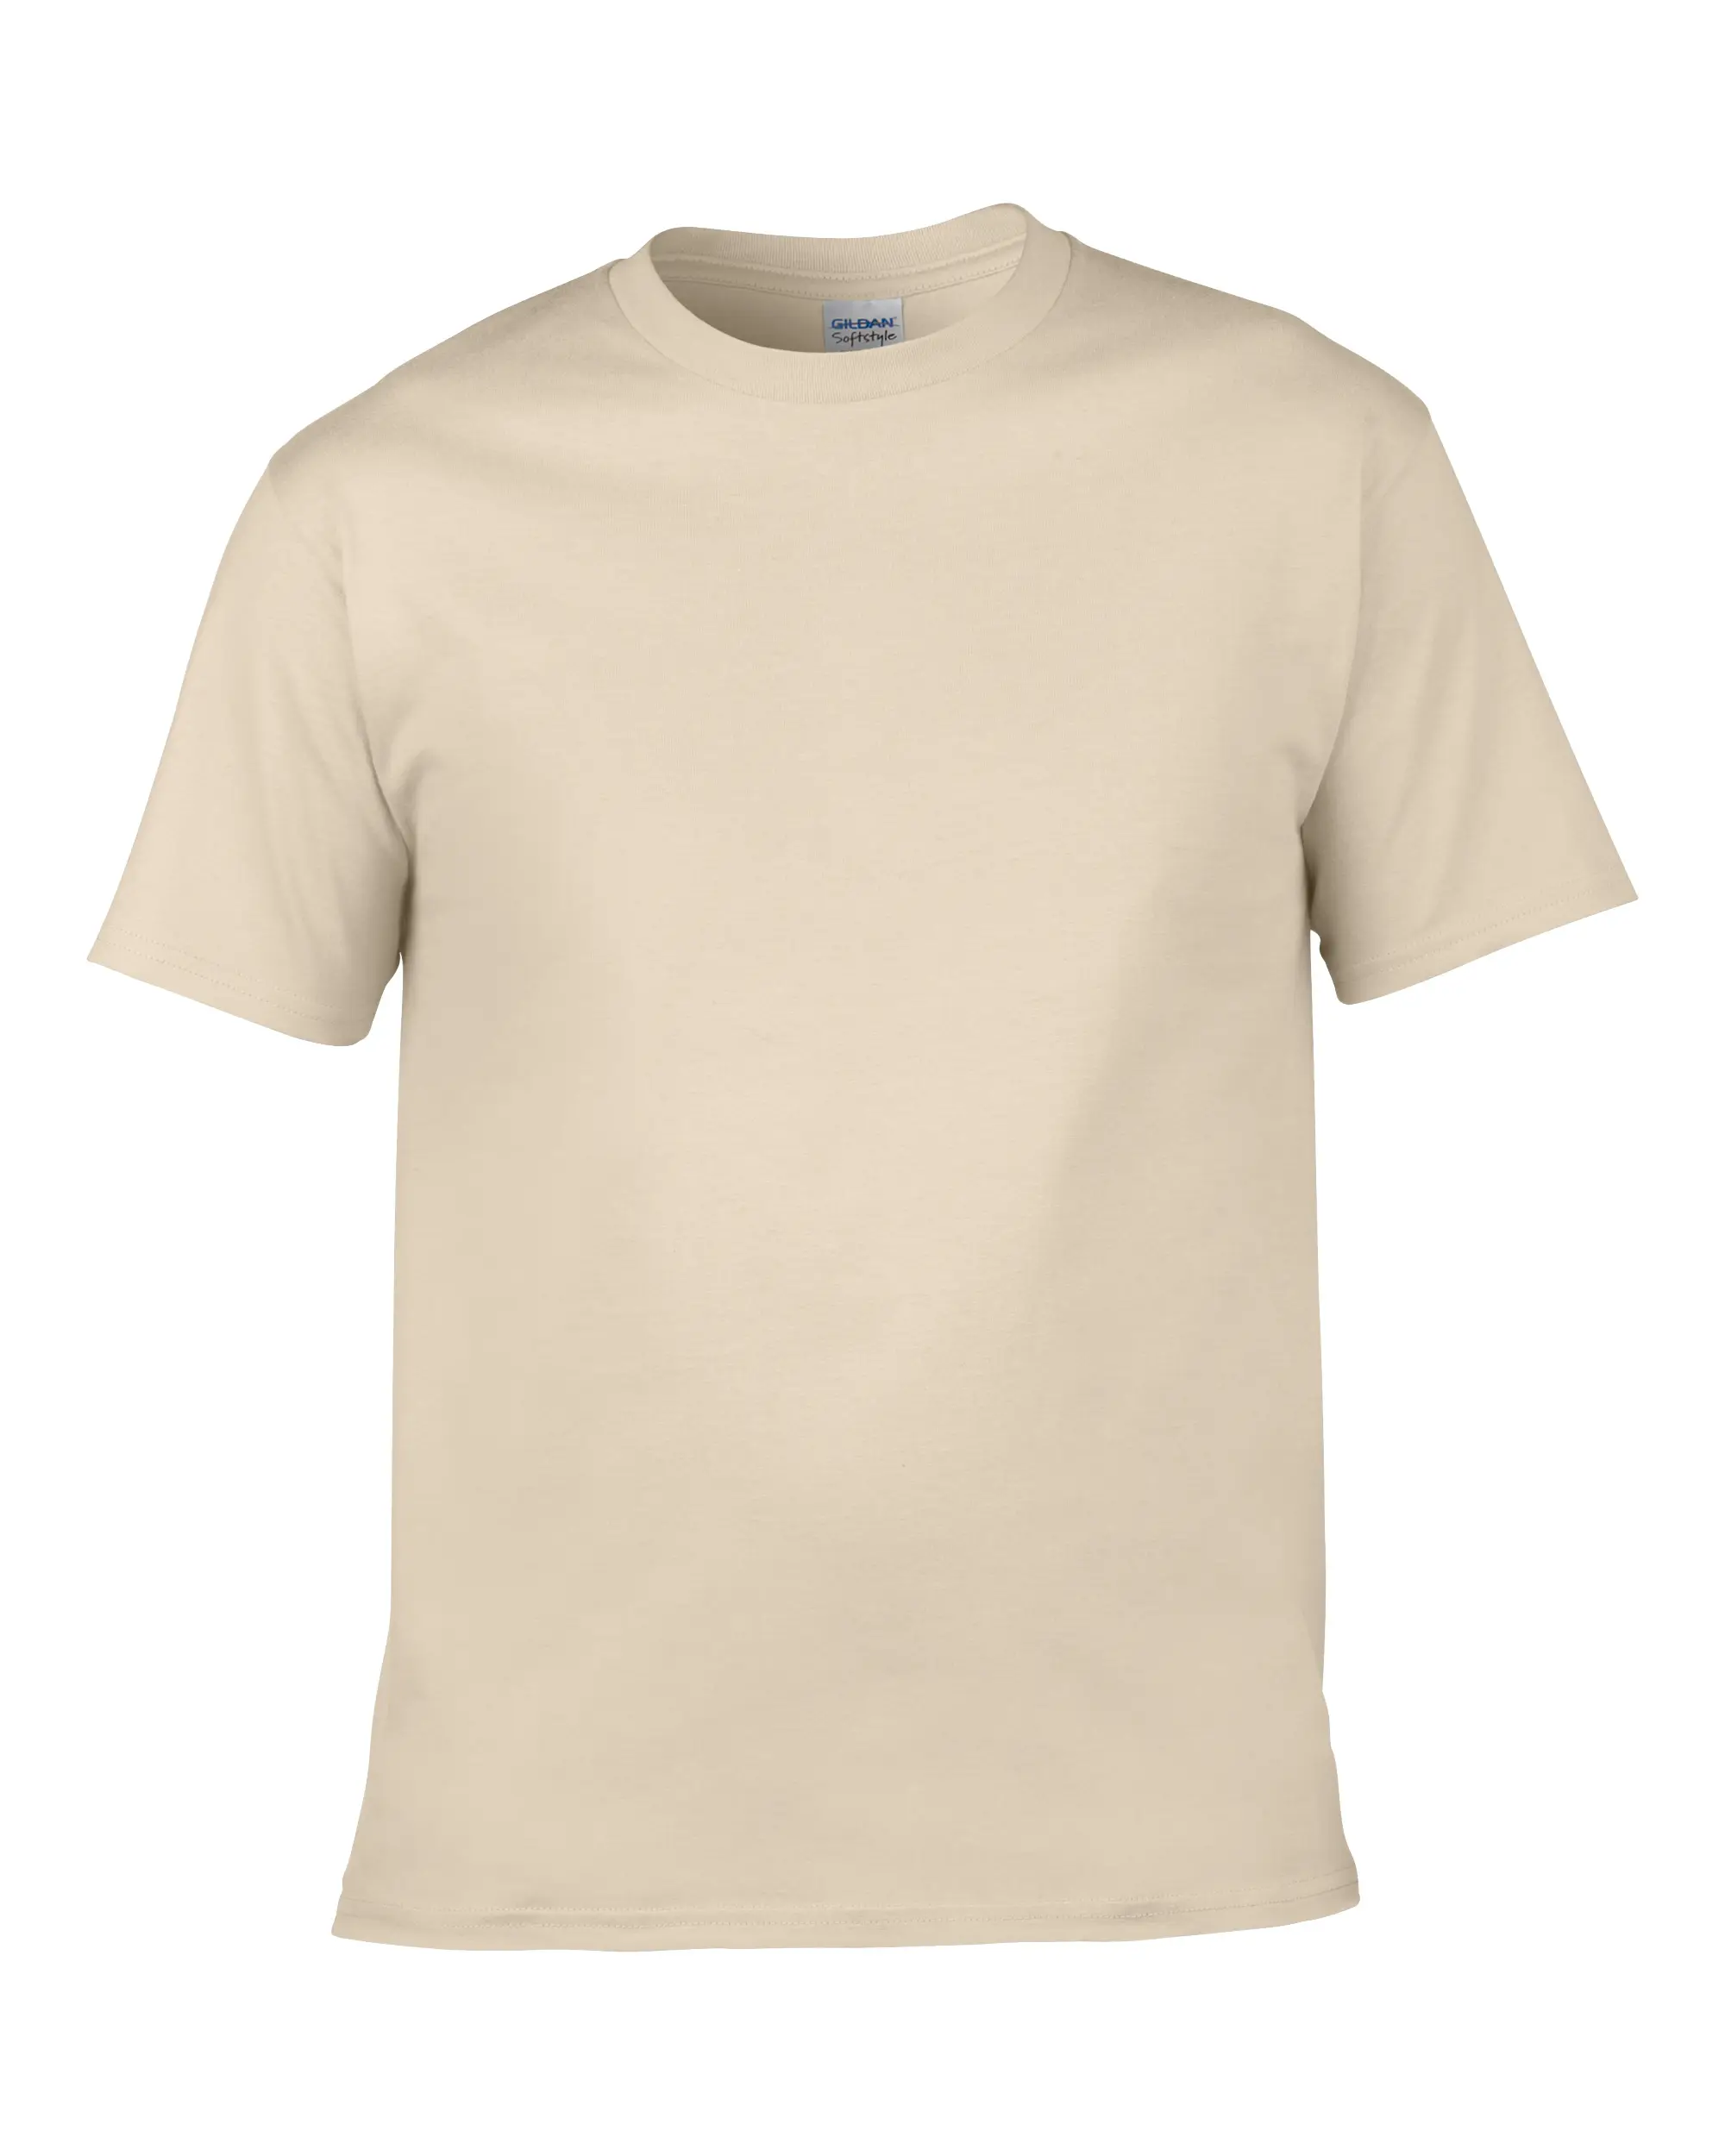 Hohe Qualität 100% Baumwolle Custom Label Private T-Shirt Mens Druck Ihre Marke Logo T Hemd